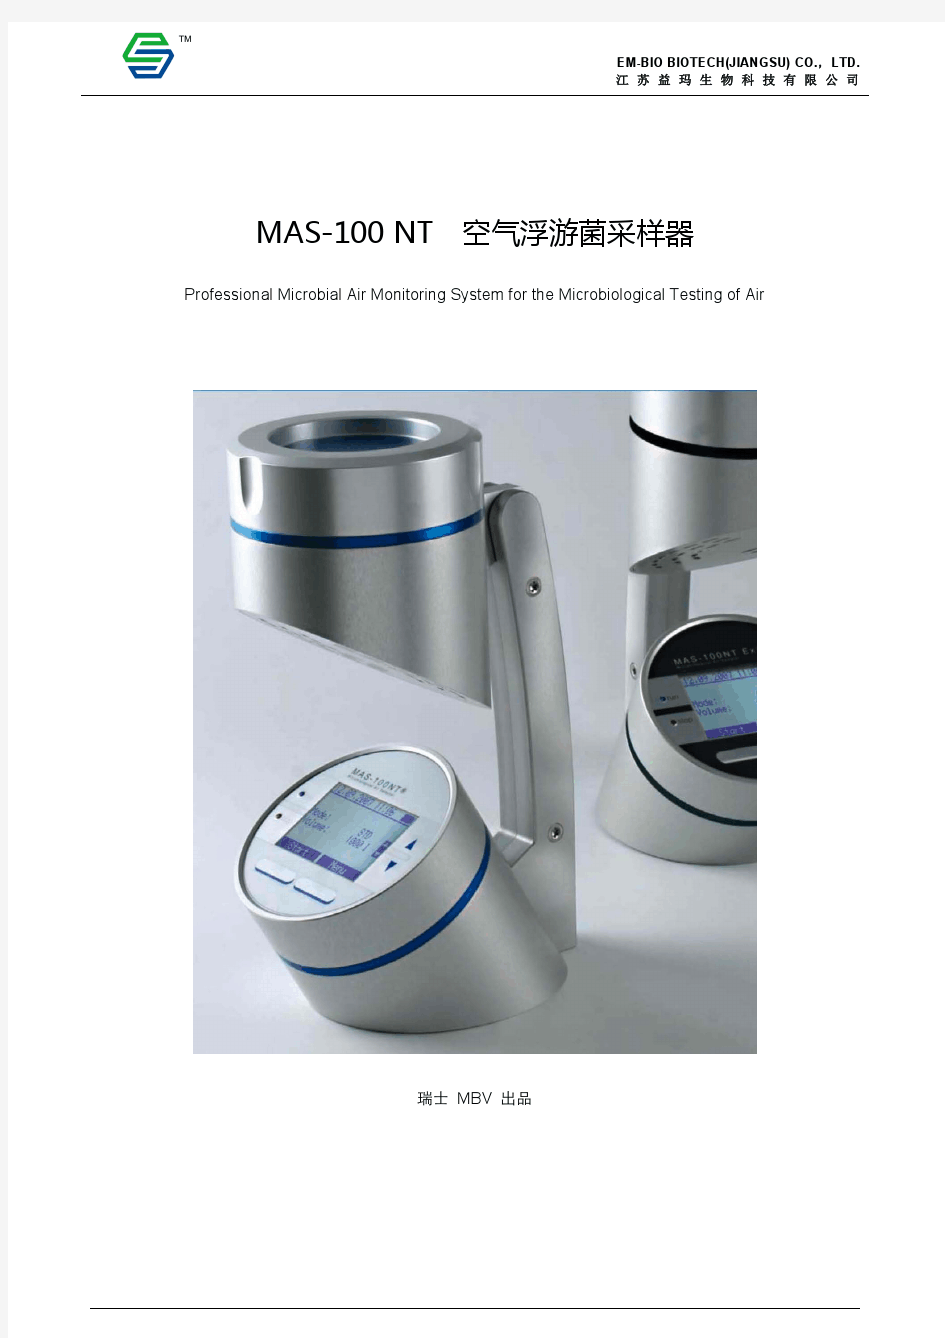 浮游生物采样器-MAS 100 NT简介